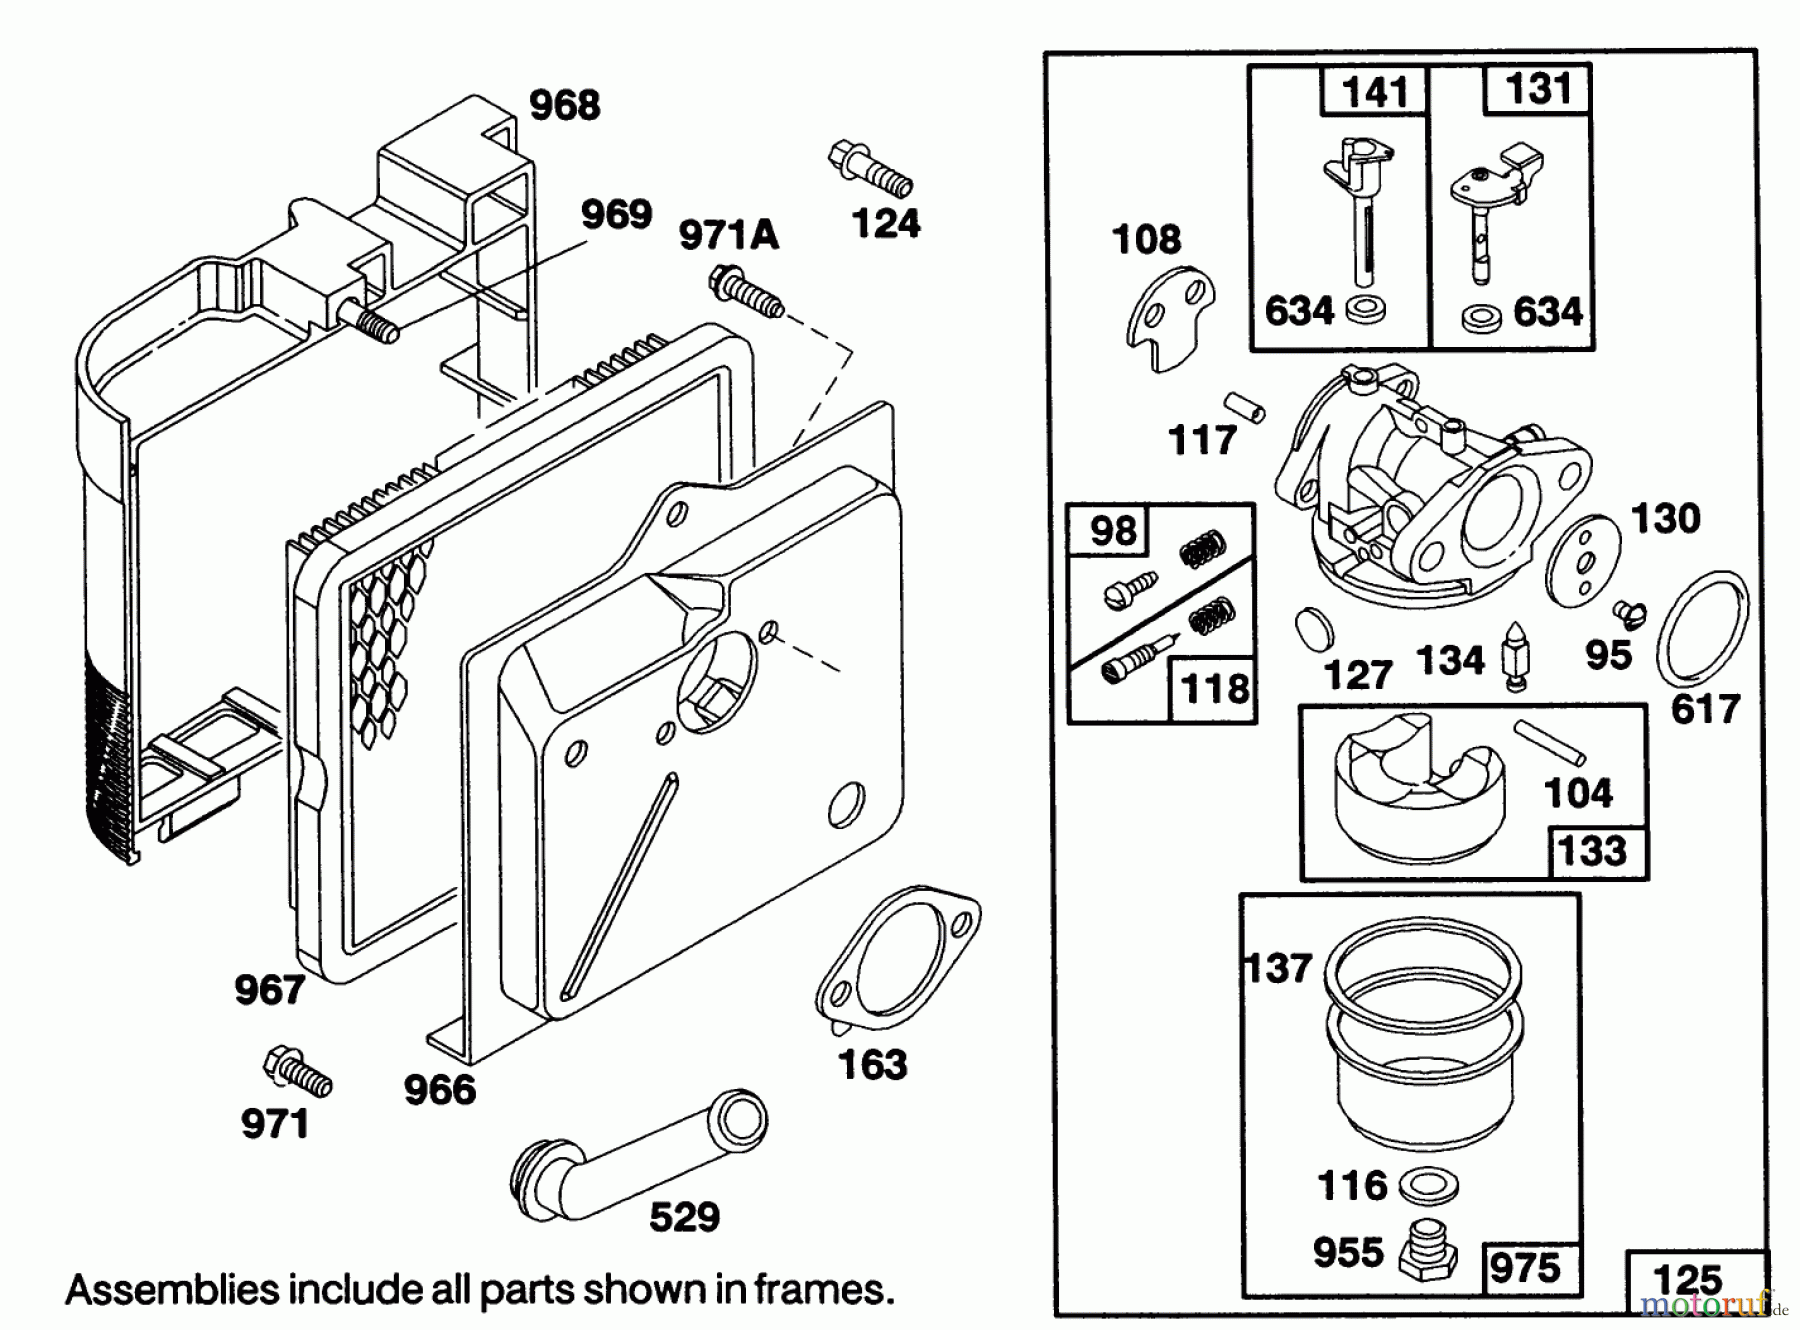  Toro Neu Mowers, Walk-Behind Seite 1 20218 - Toro Lawnmower, 1992 (2000001-2999999) ENGINE BRIGGS & STRATTON MODEL 124702-3115-01 #3